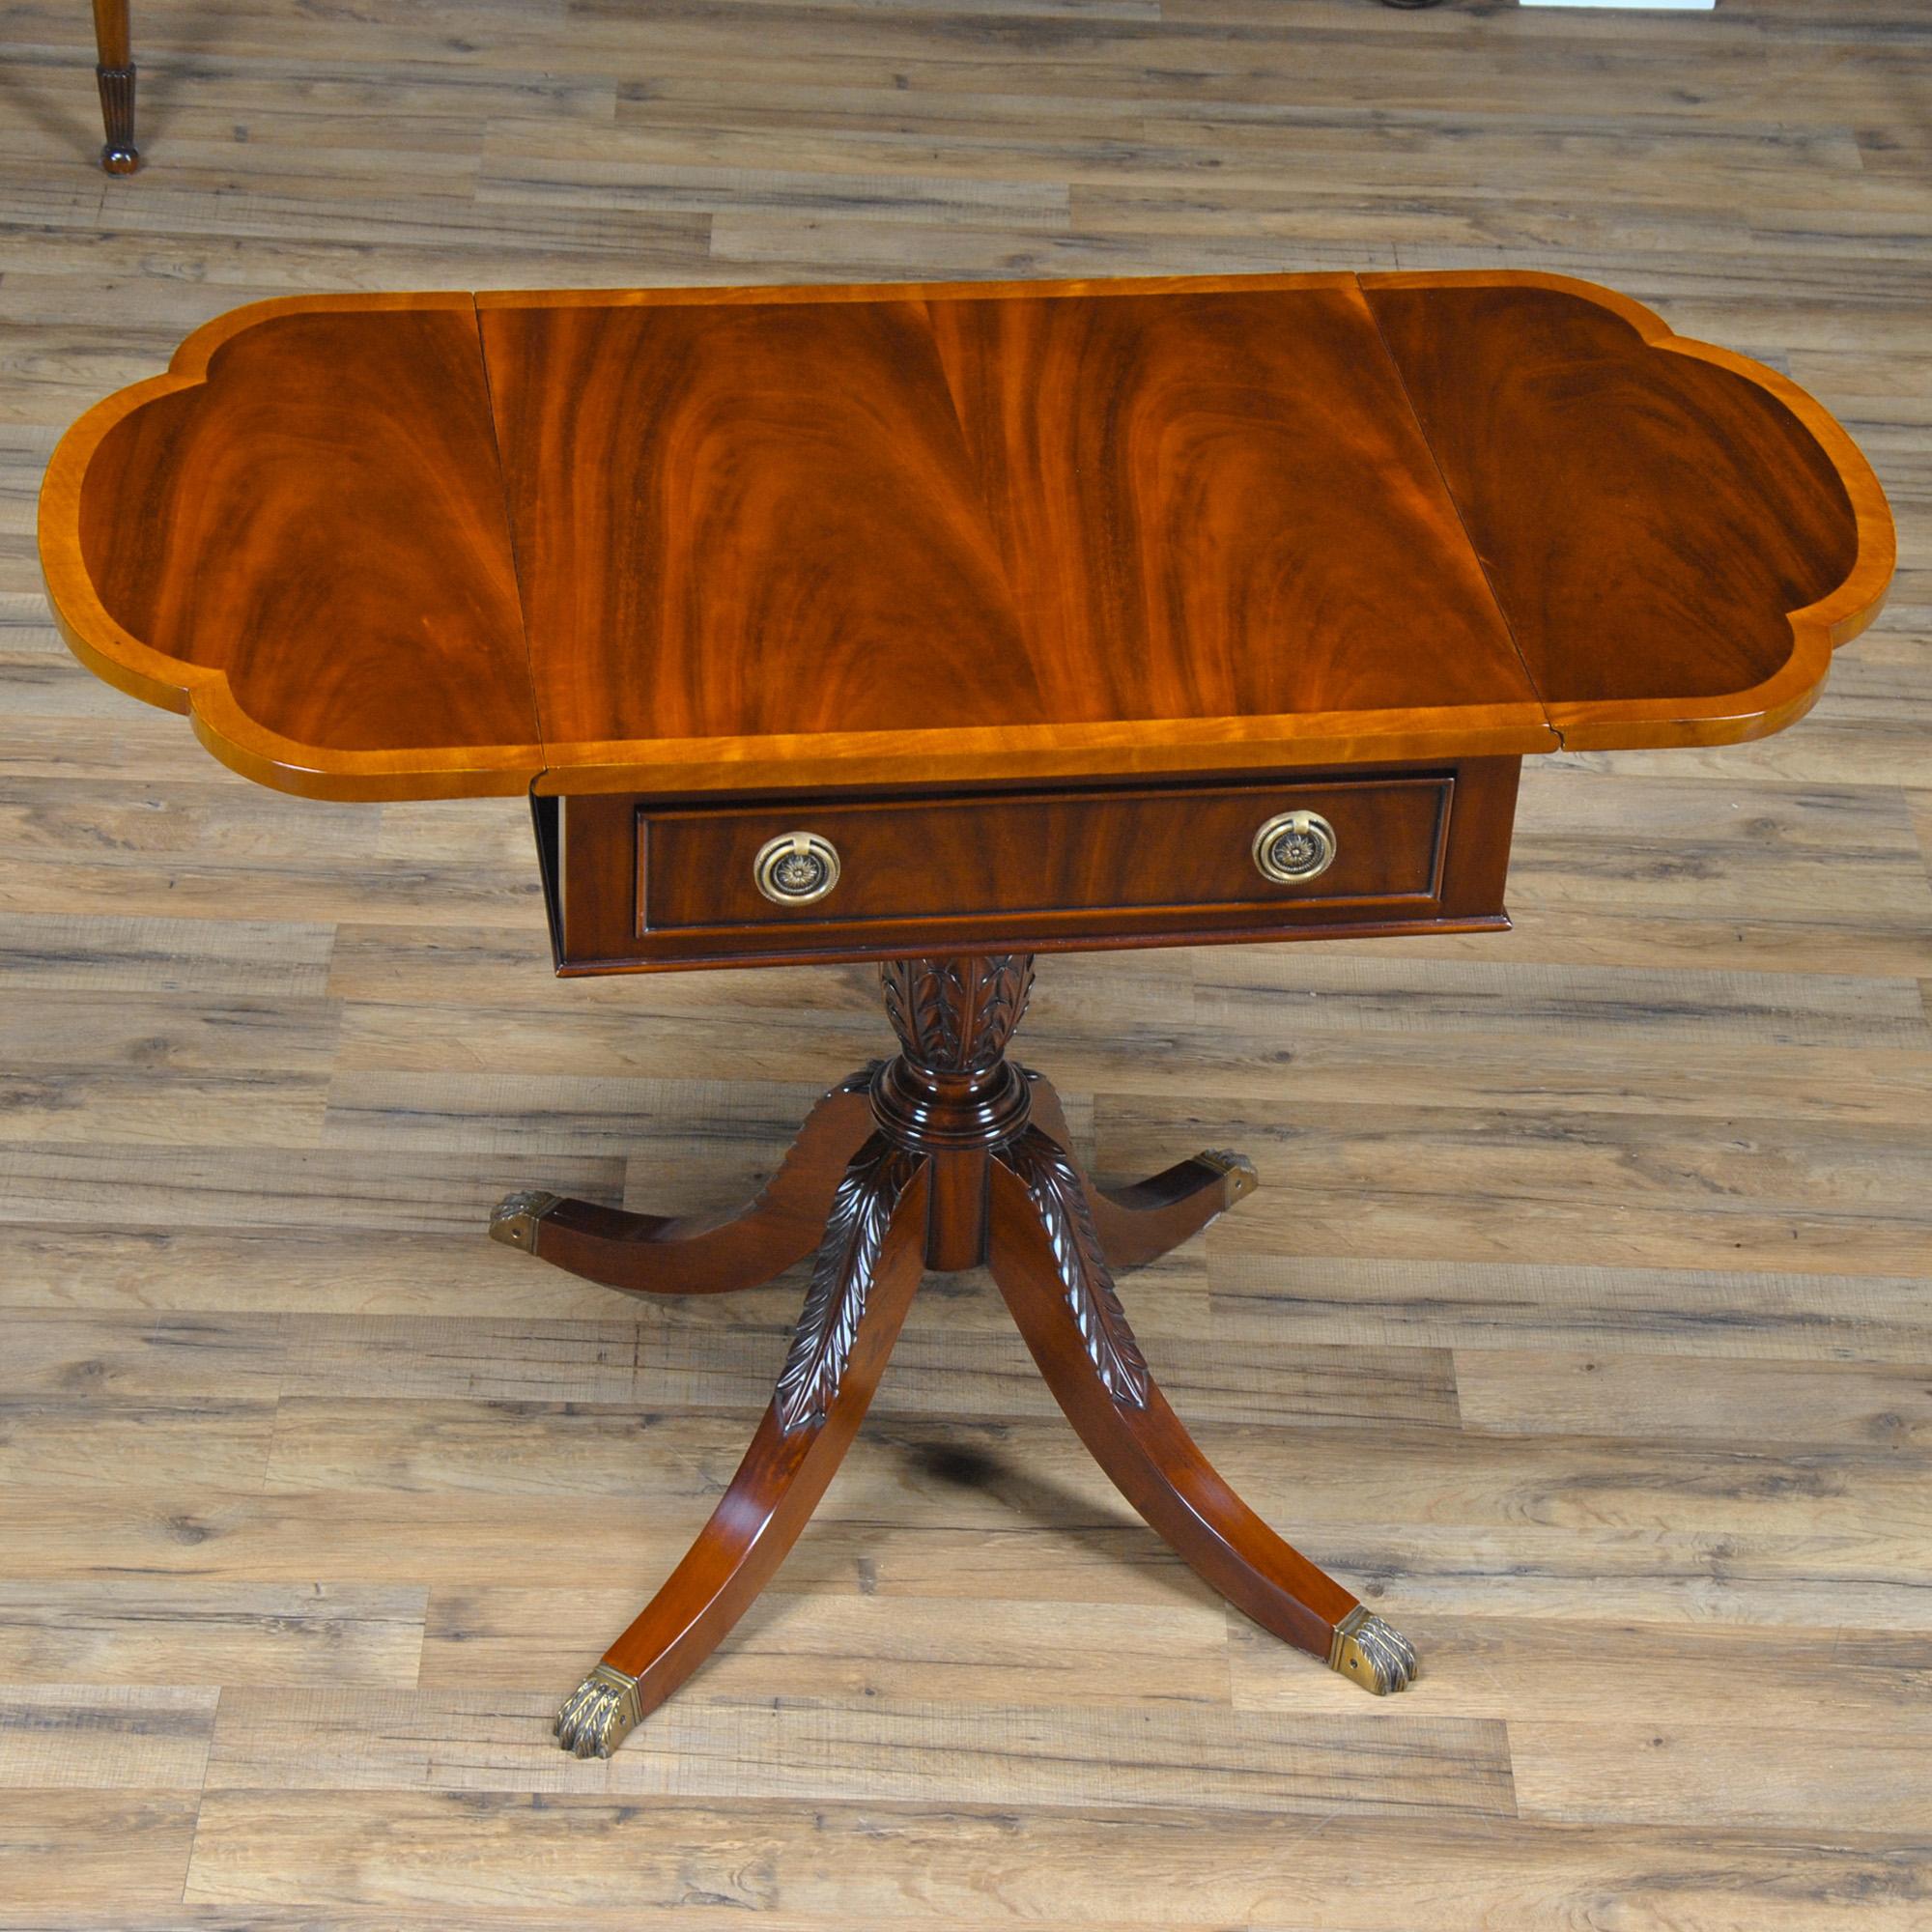 Une grande table de style Duncan Phyfe de Niagara Furniture avec un plateau magnifiquement travaillé en acajou et bois de satin, un tiroir à queue d'aronde et deux feuilles rabattables soutenues par des bras en acajou massif lorsqu'elles sont